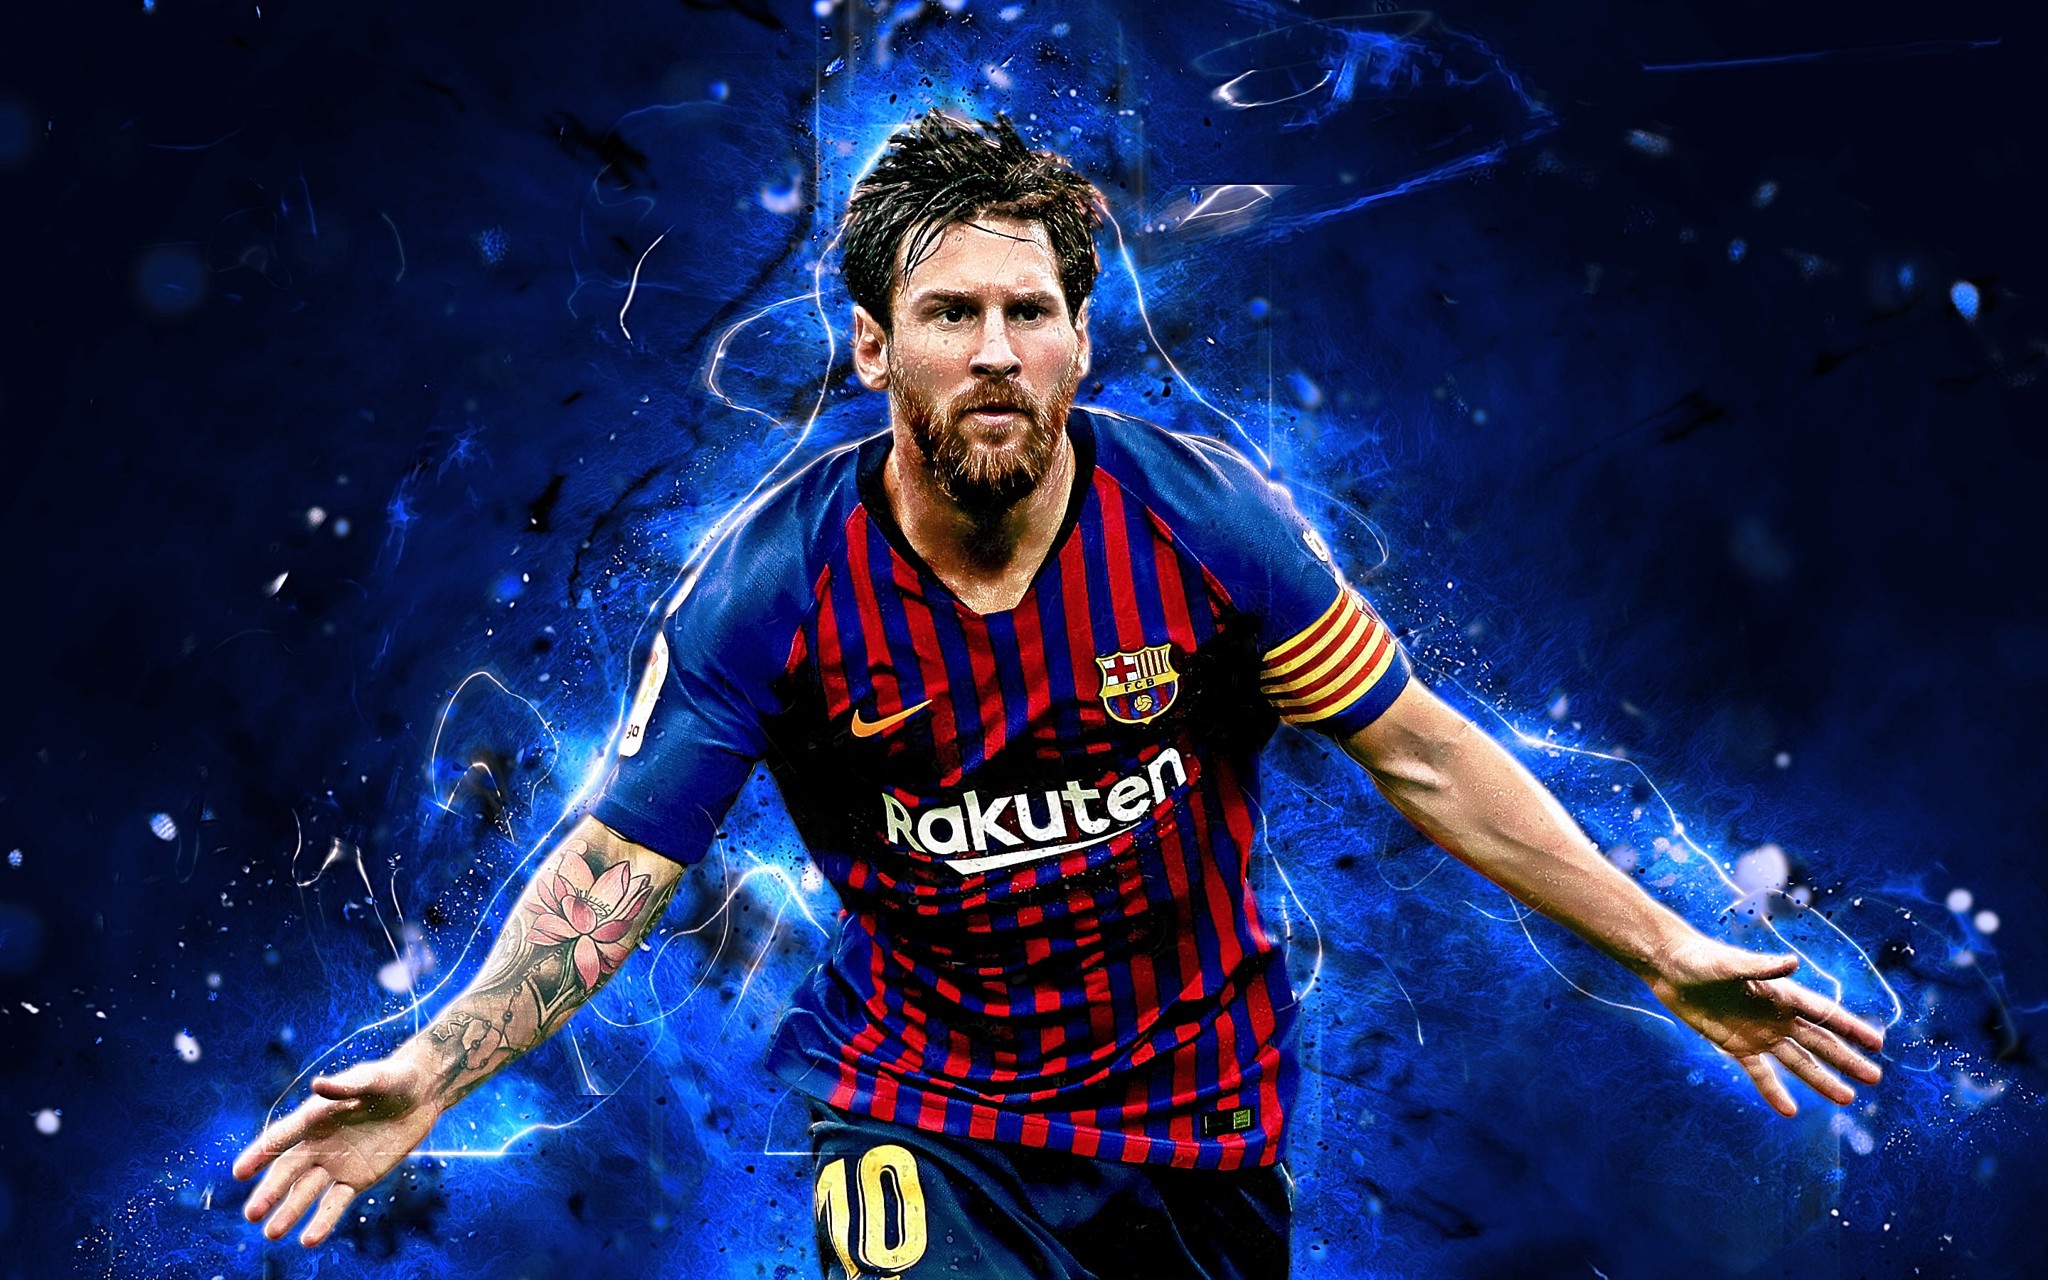 Hình nền Messi chuẩn 4K: Với những bức ảnh hình nền chuẩn 4K, bạn sẽ được trải nghiệm một cách sống động và chi tiết nhất về thần tượng của mình là Lionel Messi. Hãy cùng đắm chìm vào không gian siêu thực với những hình nền ấn tượng này.